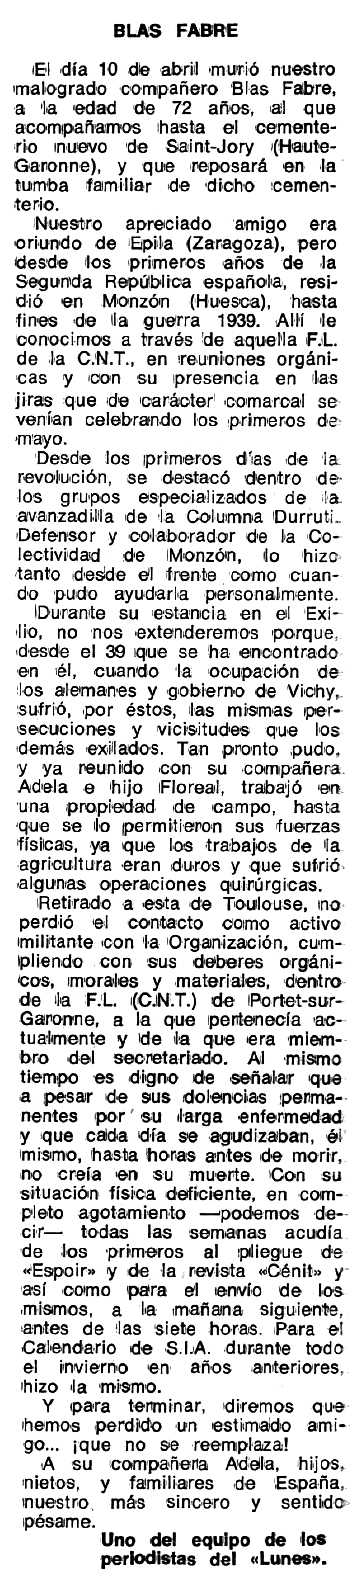 Necrològica de Blas Fabre Domínguez apareguda en el periòdic tolosà "Espoir" del 21 de maig de 1979